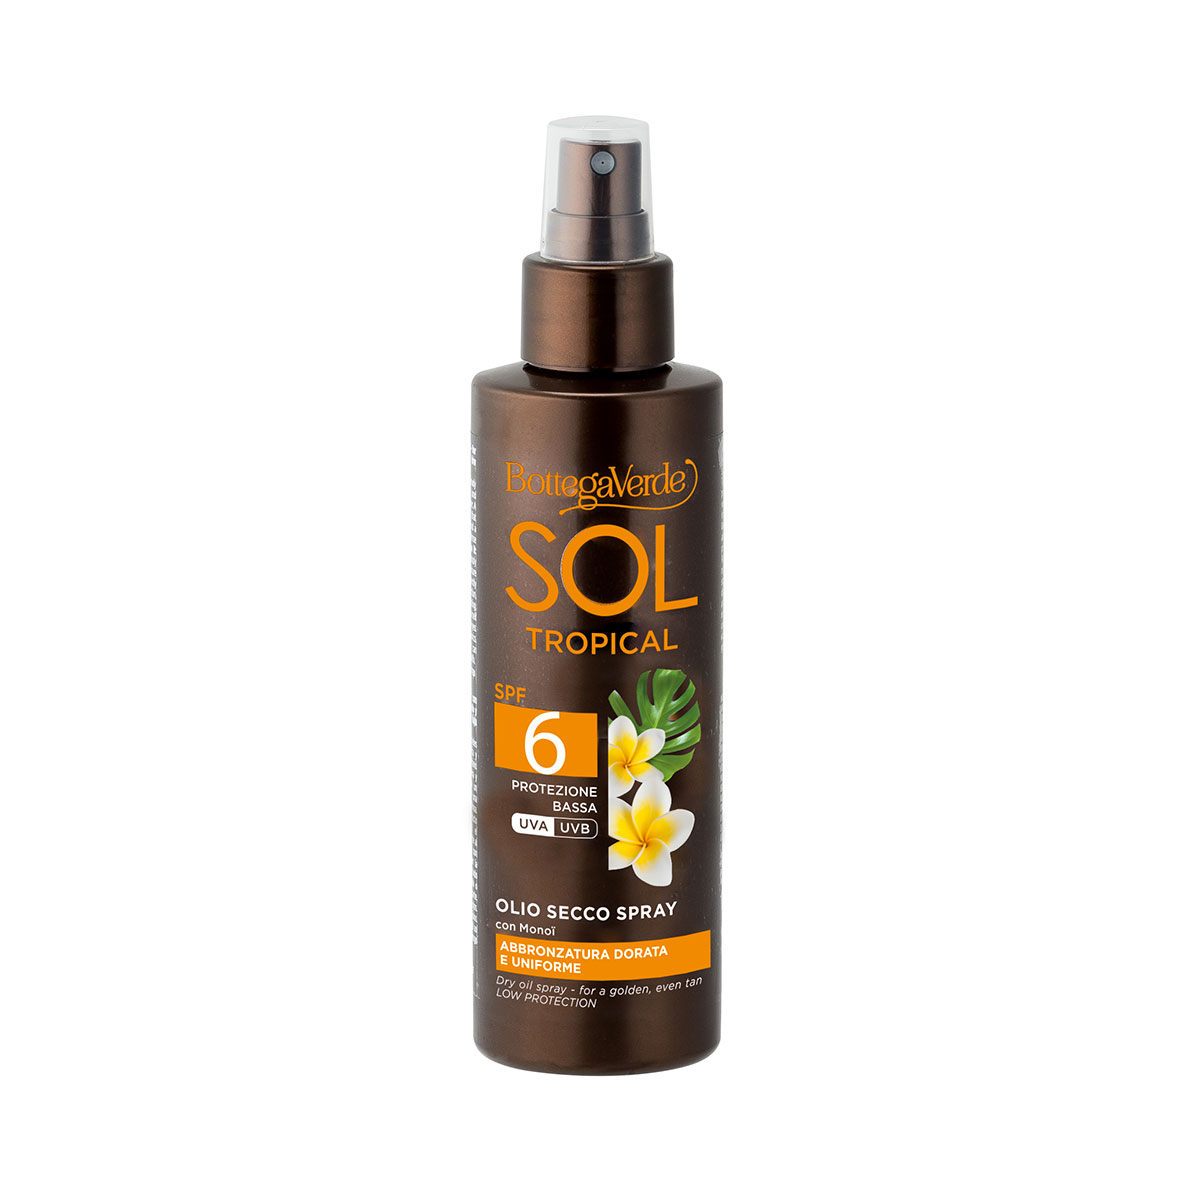 SOL Tropical Olio secco spray abbronzatura dorata e uniforme con Monoï protezione bassa SPF 6